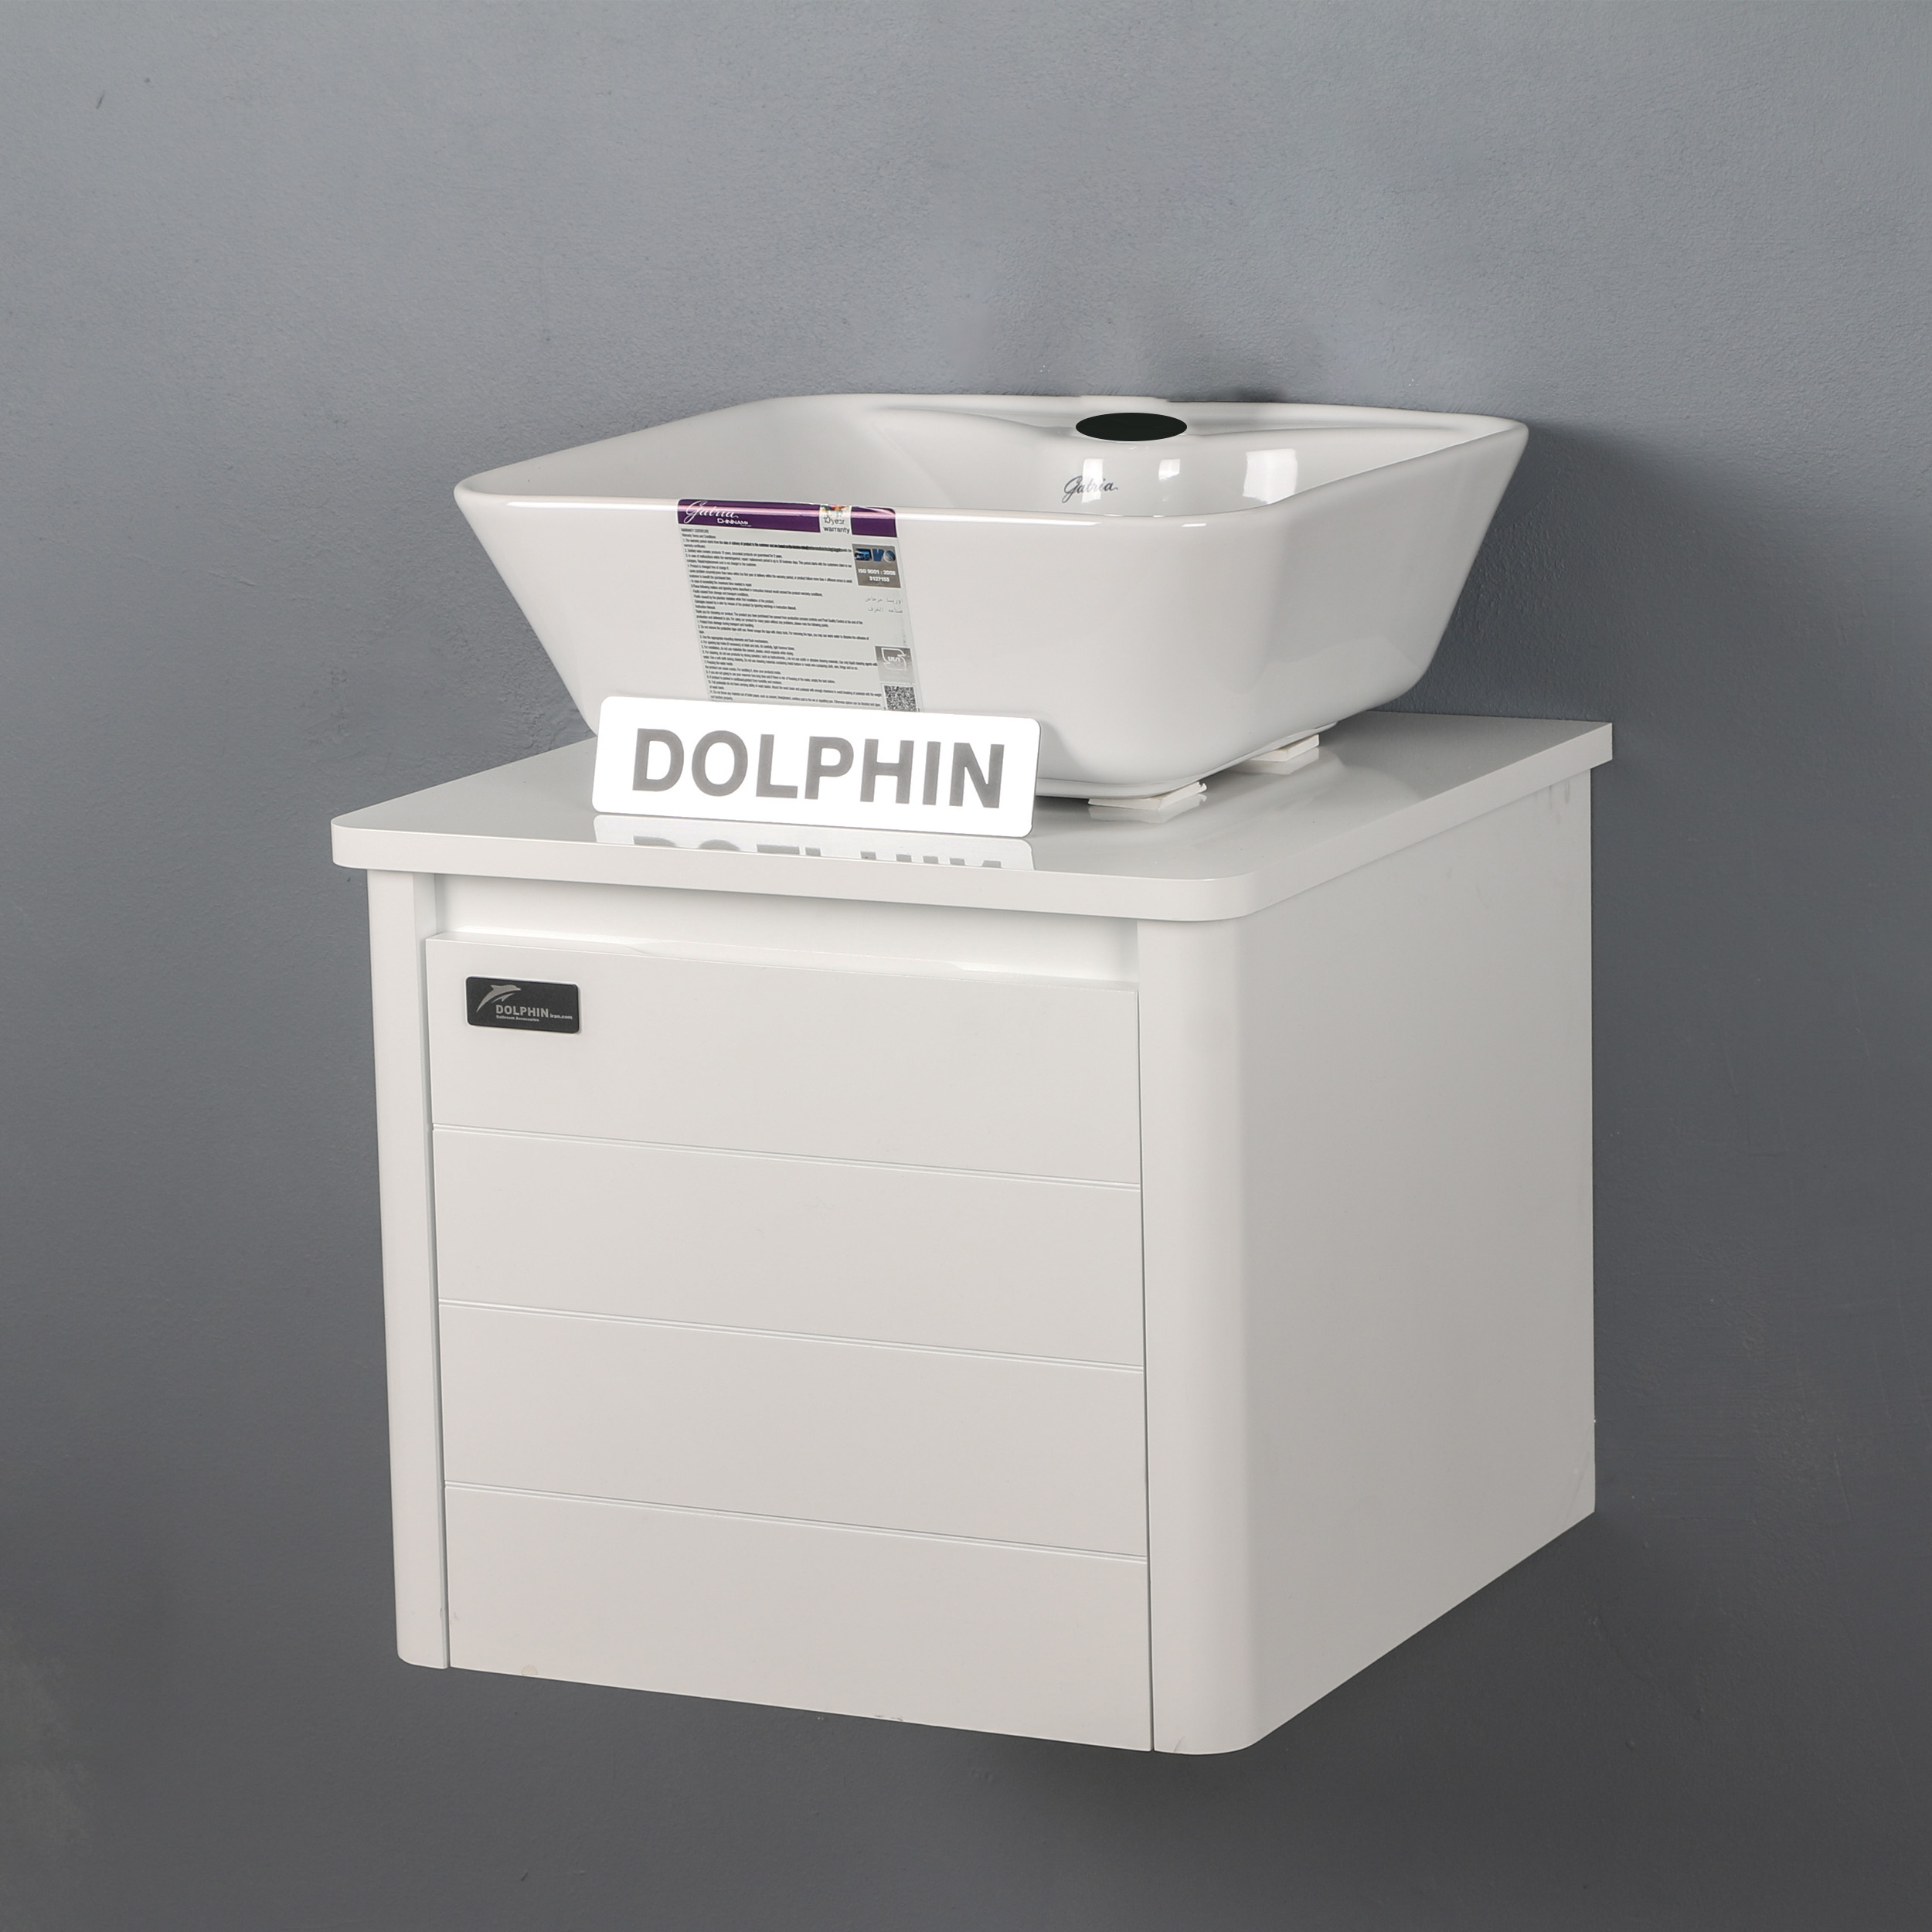 ست کابینت و روشویی دلفین مدل 1111-JD به همراه آینه و باکس